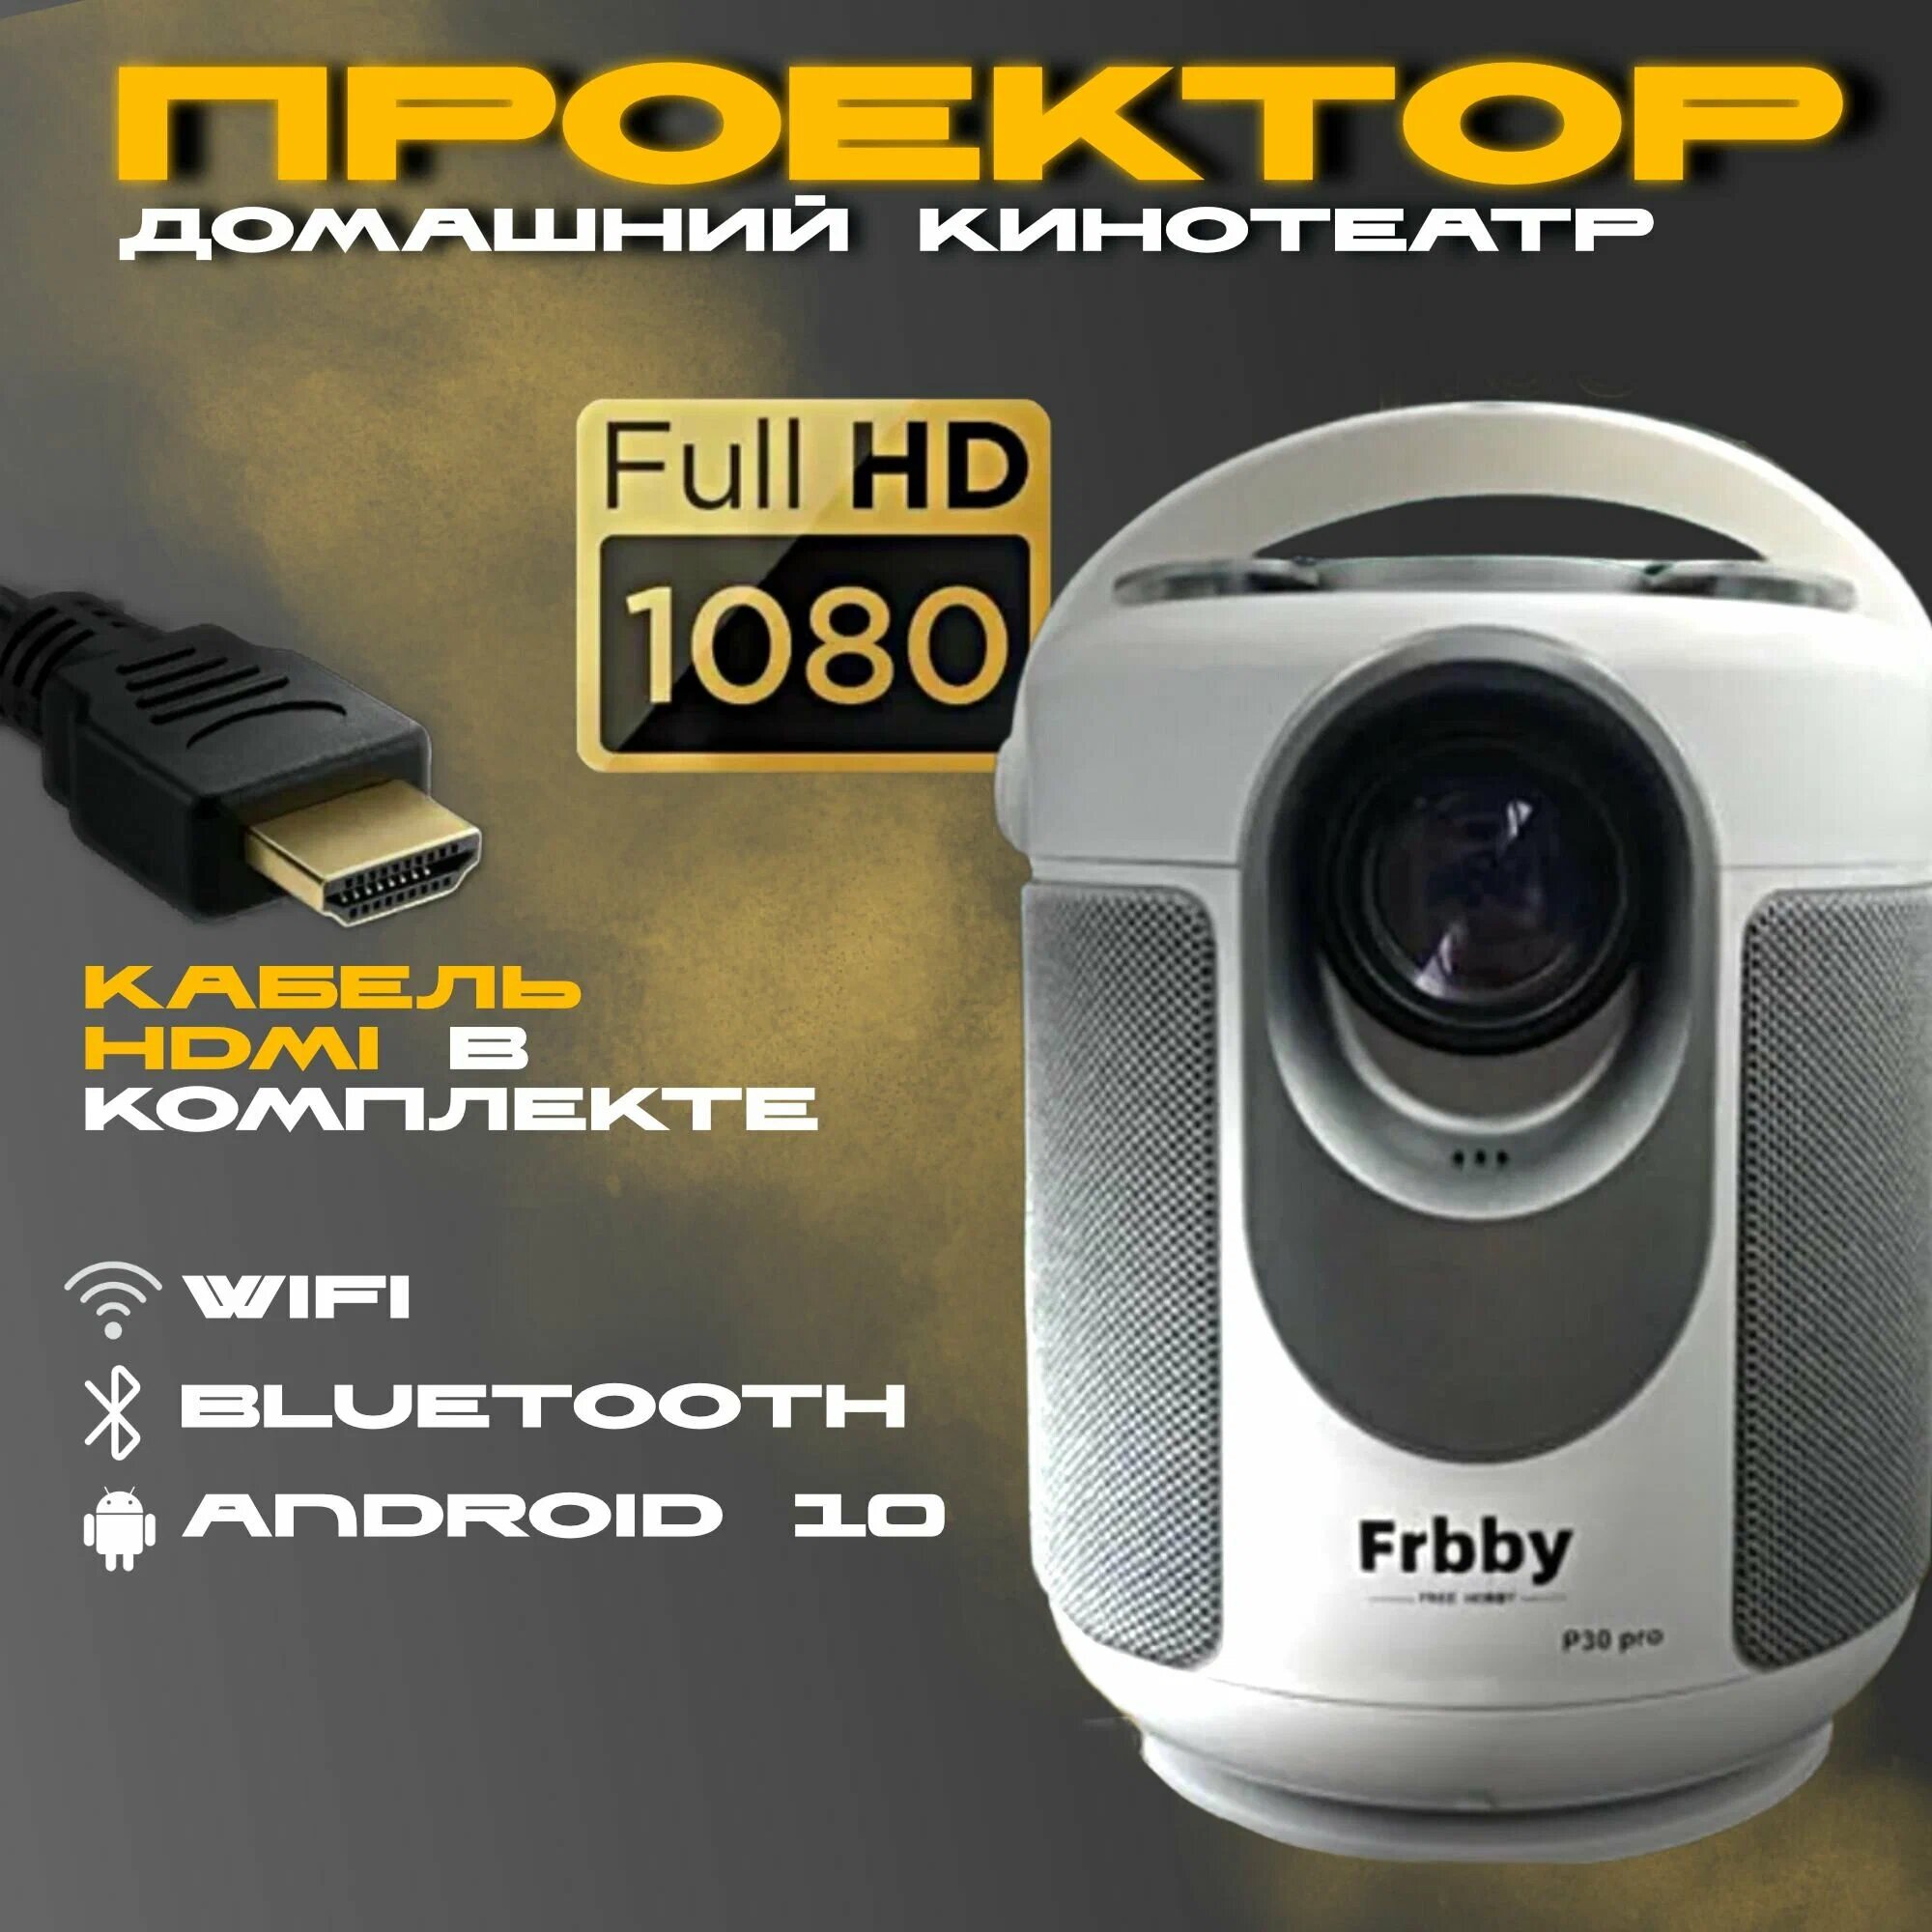 Проектор Frbby P30 PRO Full HD Android TV, Портативный проектор 5G, HDMI, Проектор мультимедийный Wi-Fi 1080p / Белый